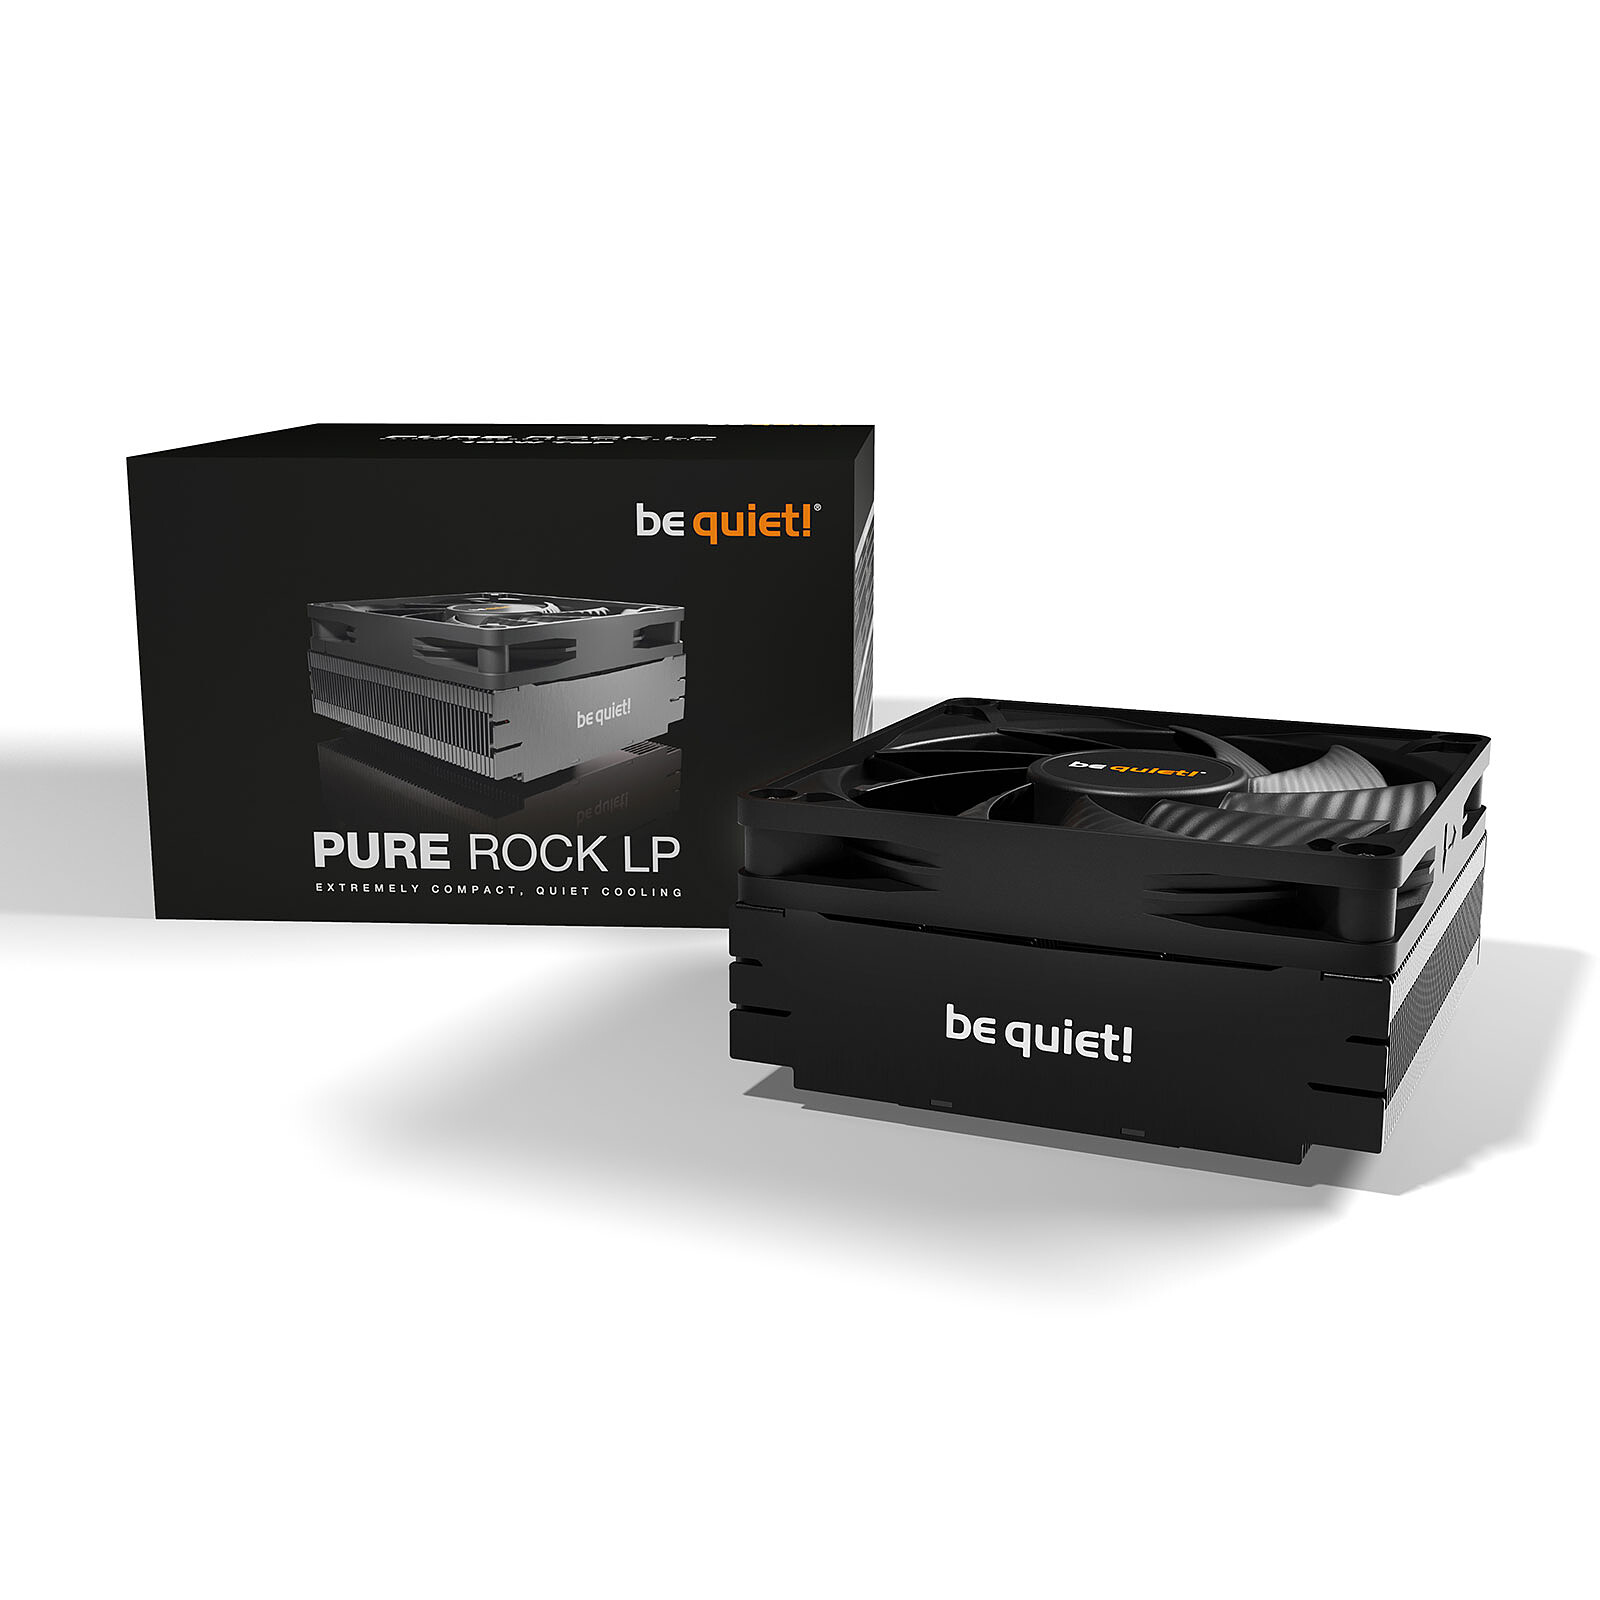 be quiet! Pure Rock 2 FX Black - Ventilateur processeur - LDLC